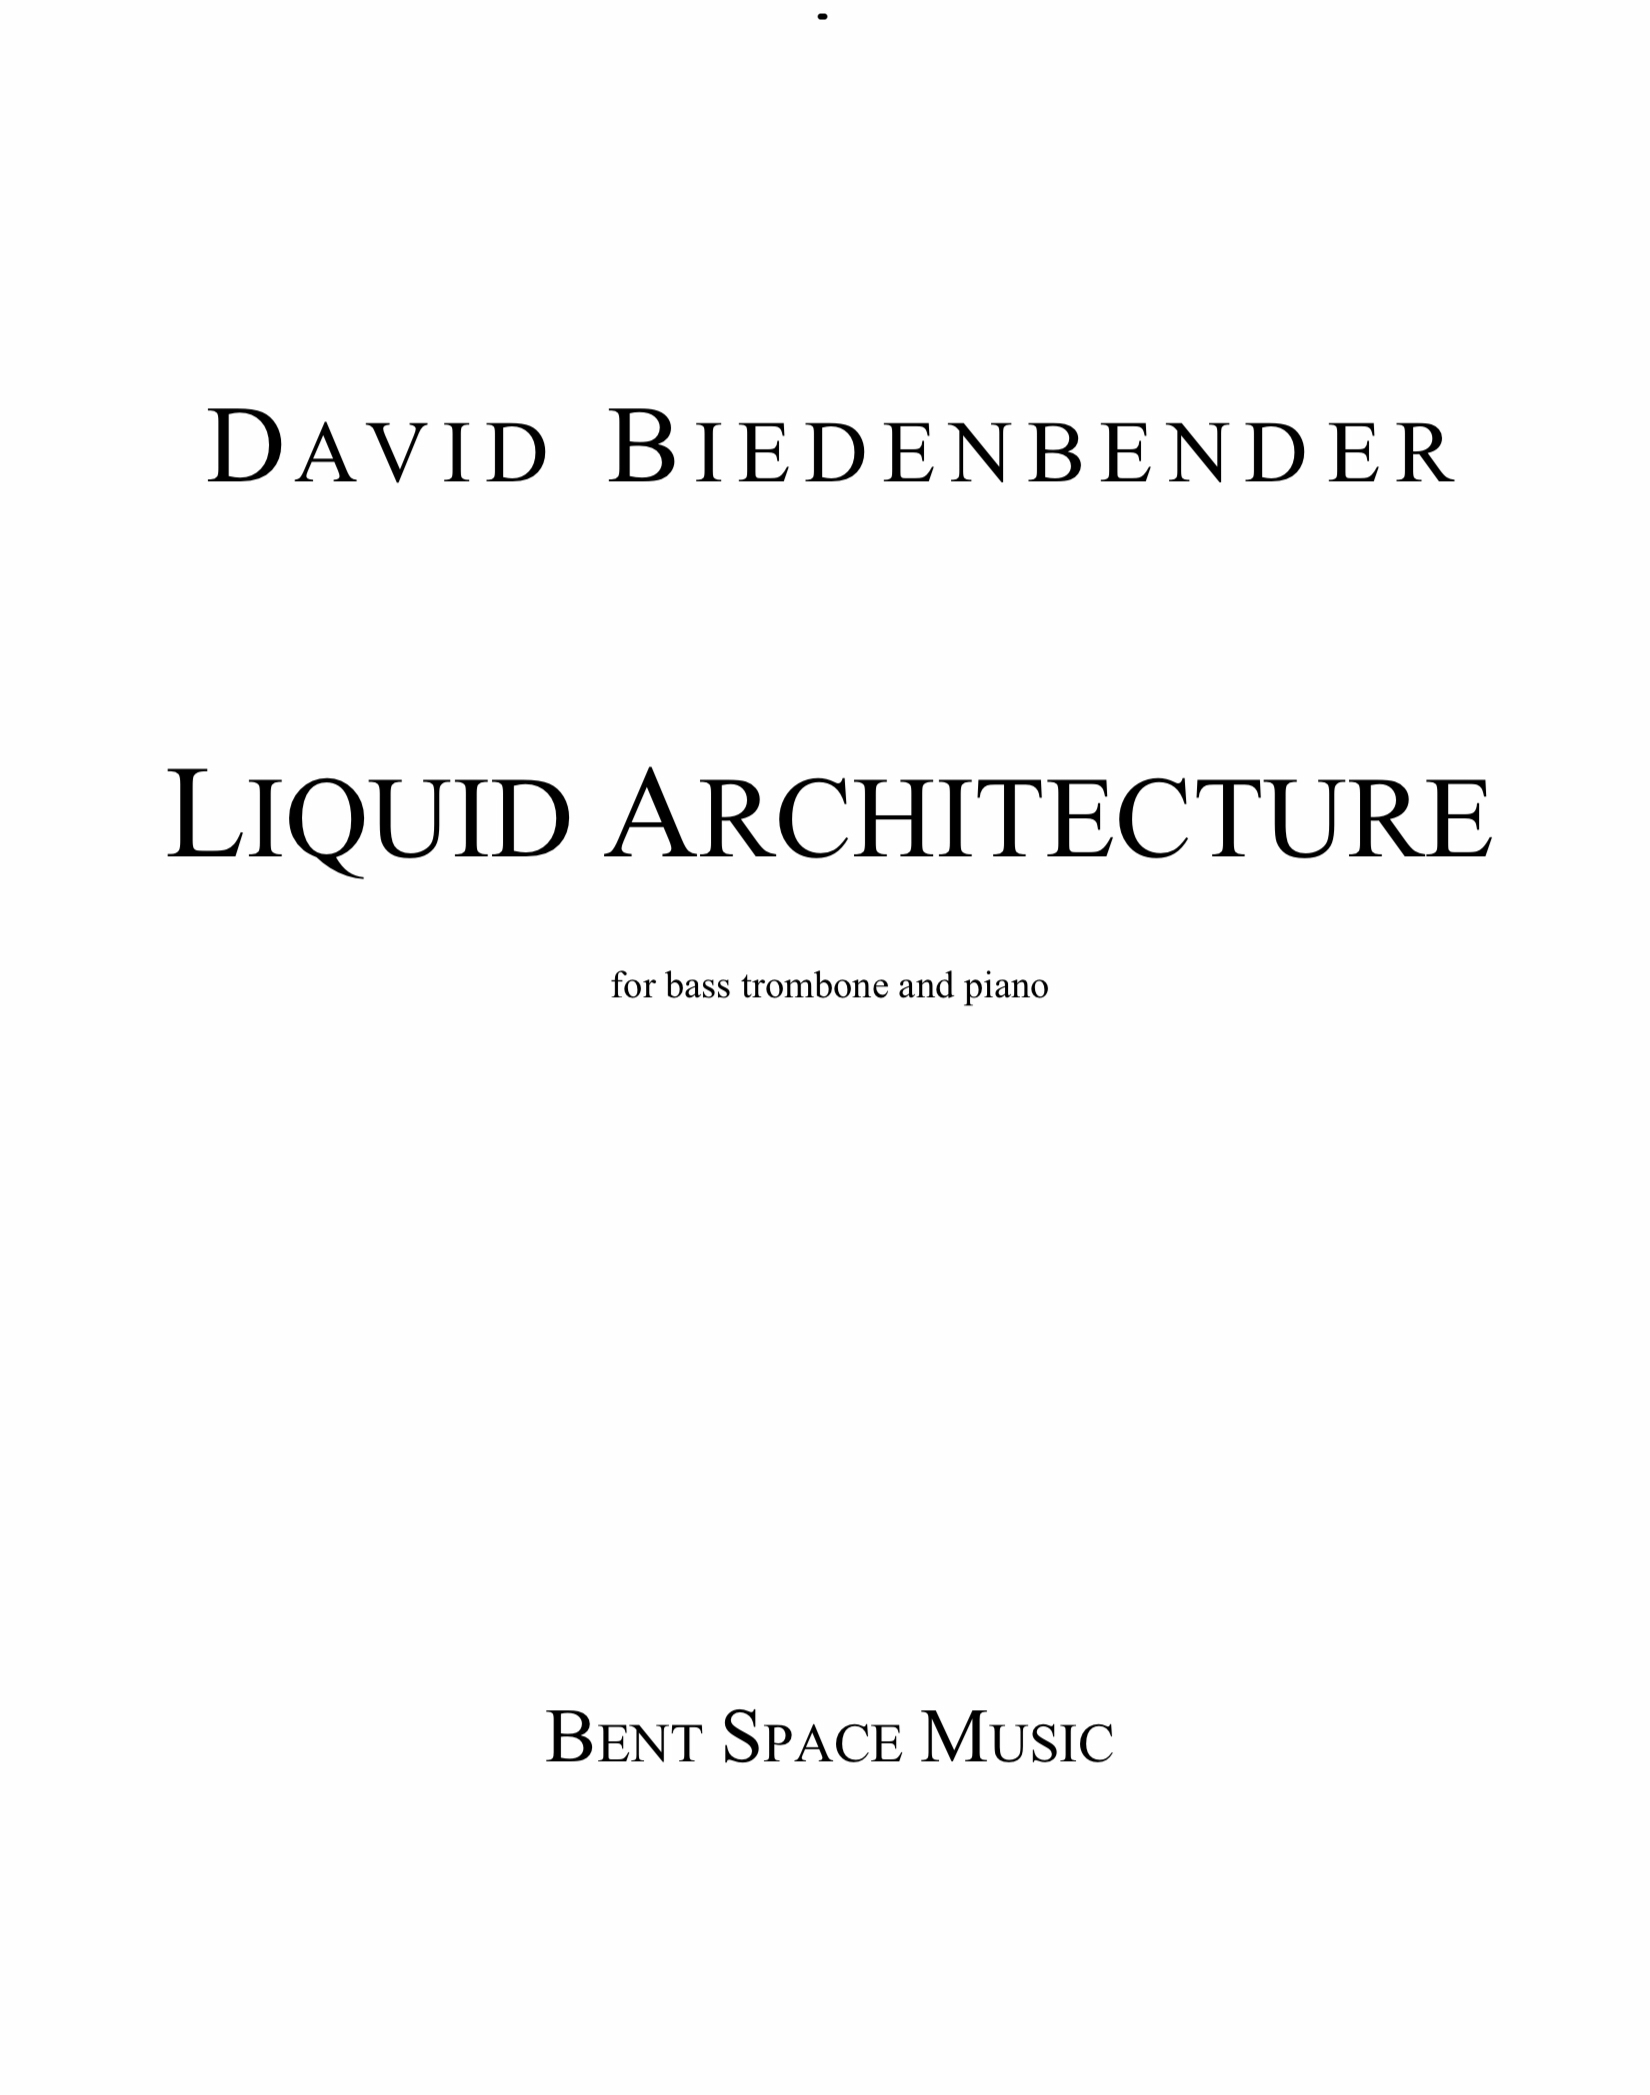 Liquid Architecture by David Biedenbender